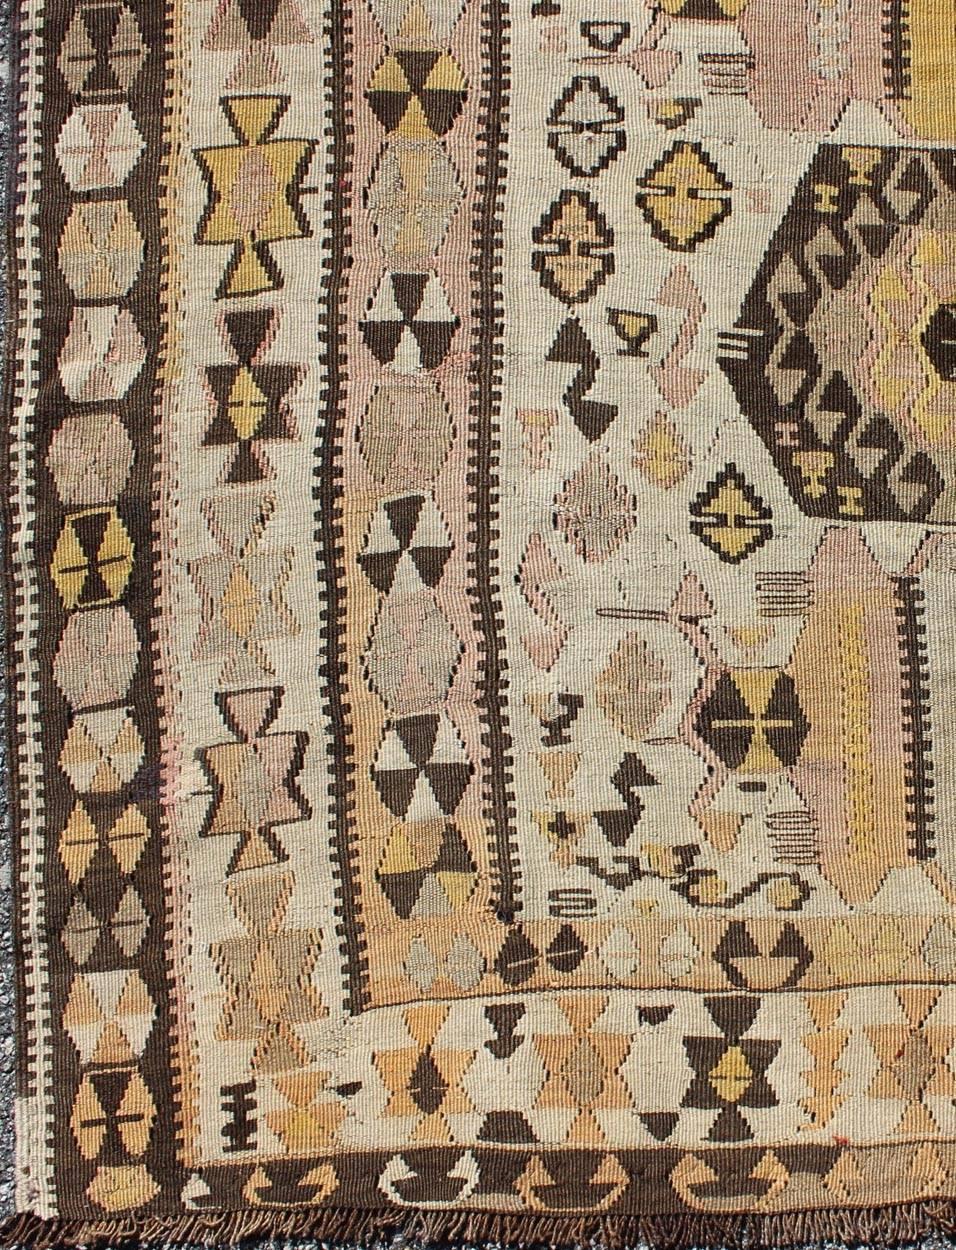 Ce tapis Kilim turc vintage (vers le milieu du 20e siècle) présente un mélange unique de couleurs et un beau design complexe. Les médaillons centraux consistent en une ligne verticale de tribus, entourée de figures complémentaires dans le champ et